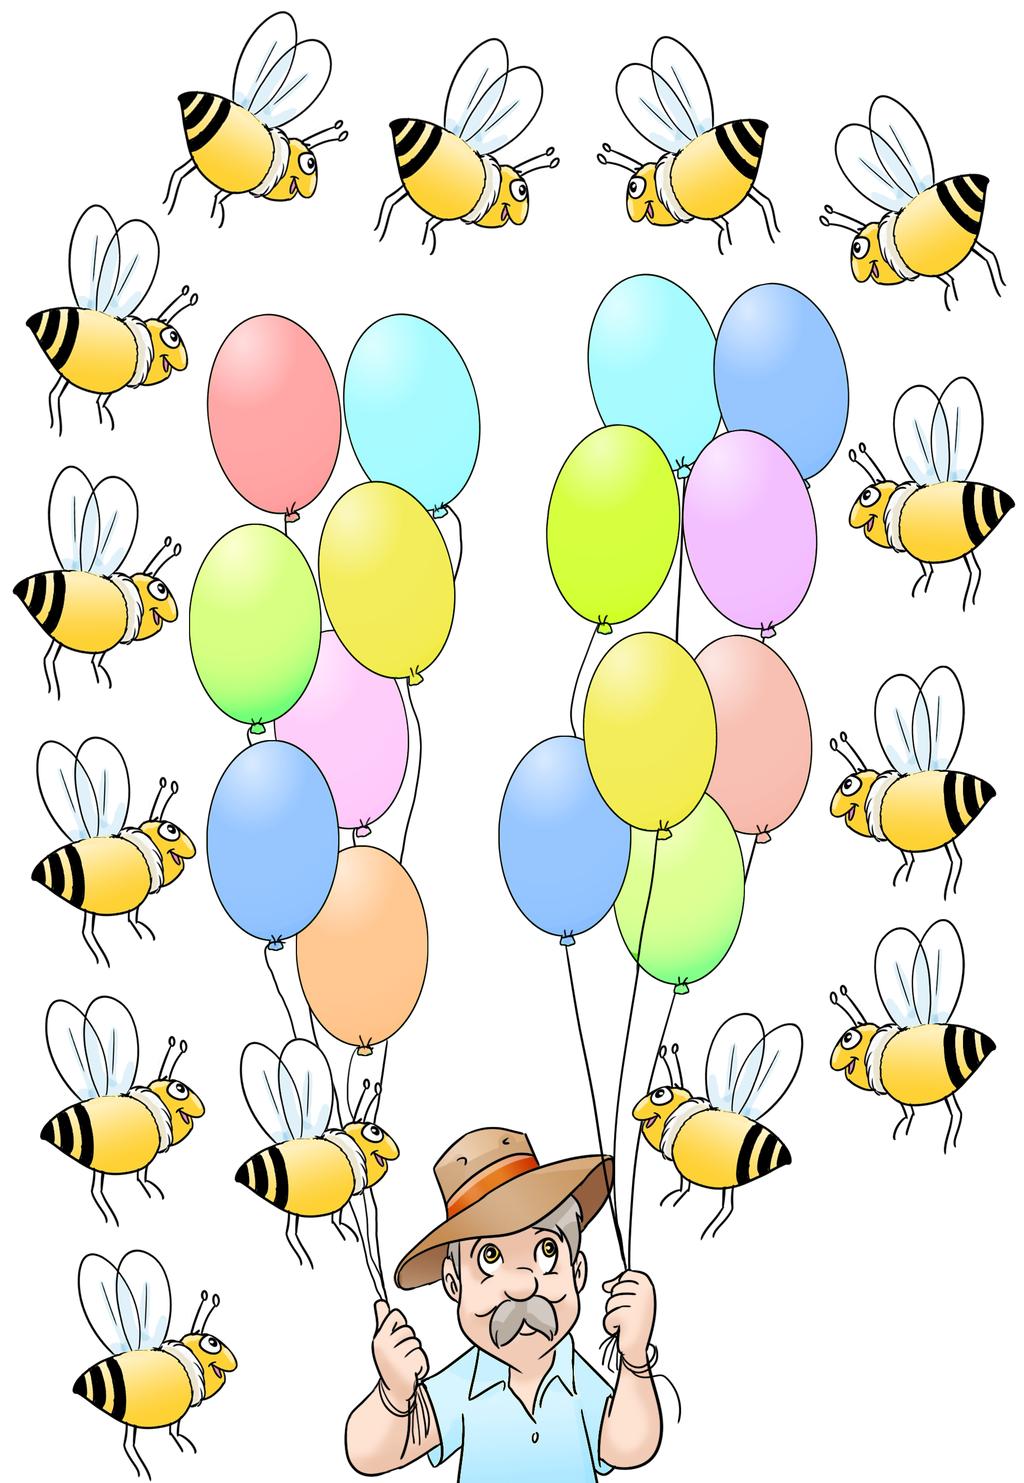 Çarpma İşlemi Arılar balonları patlatmaya hazırlanıyorlar. Arıların hangi balonu patlatacağını işlemleri yaparak bulalım.